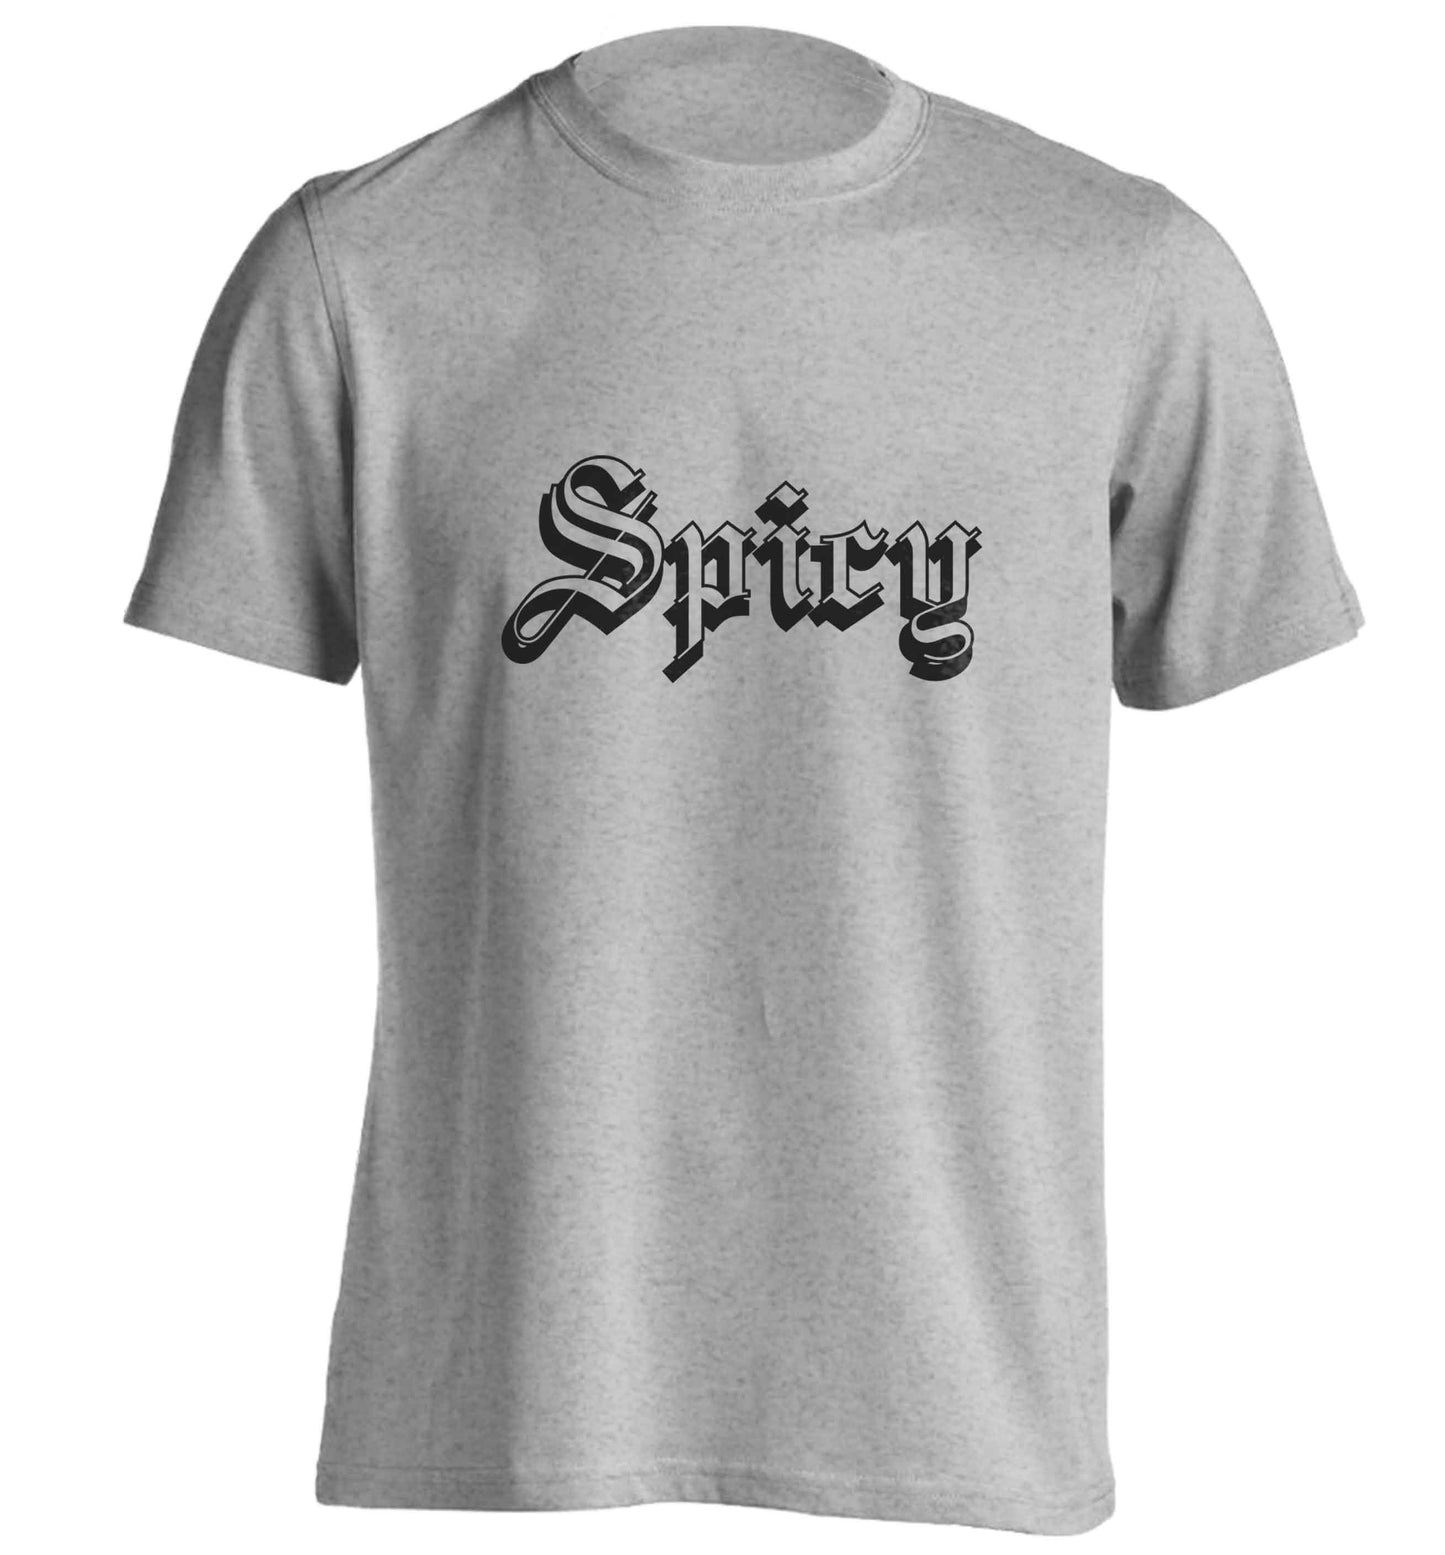 Spicy adults unisex grey Tshirt 2XL